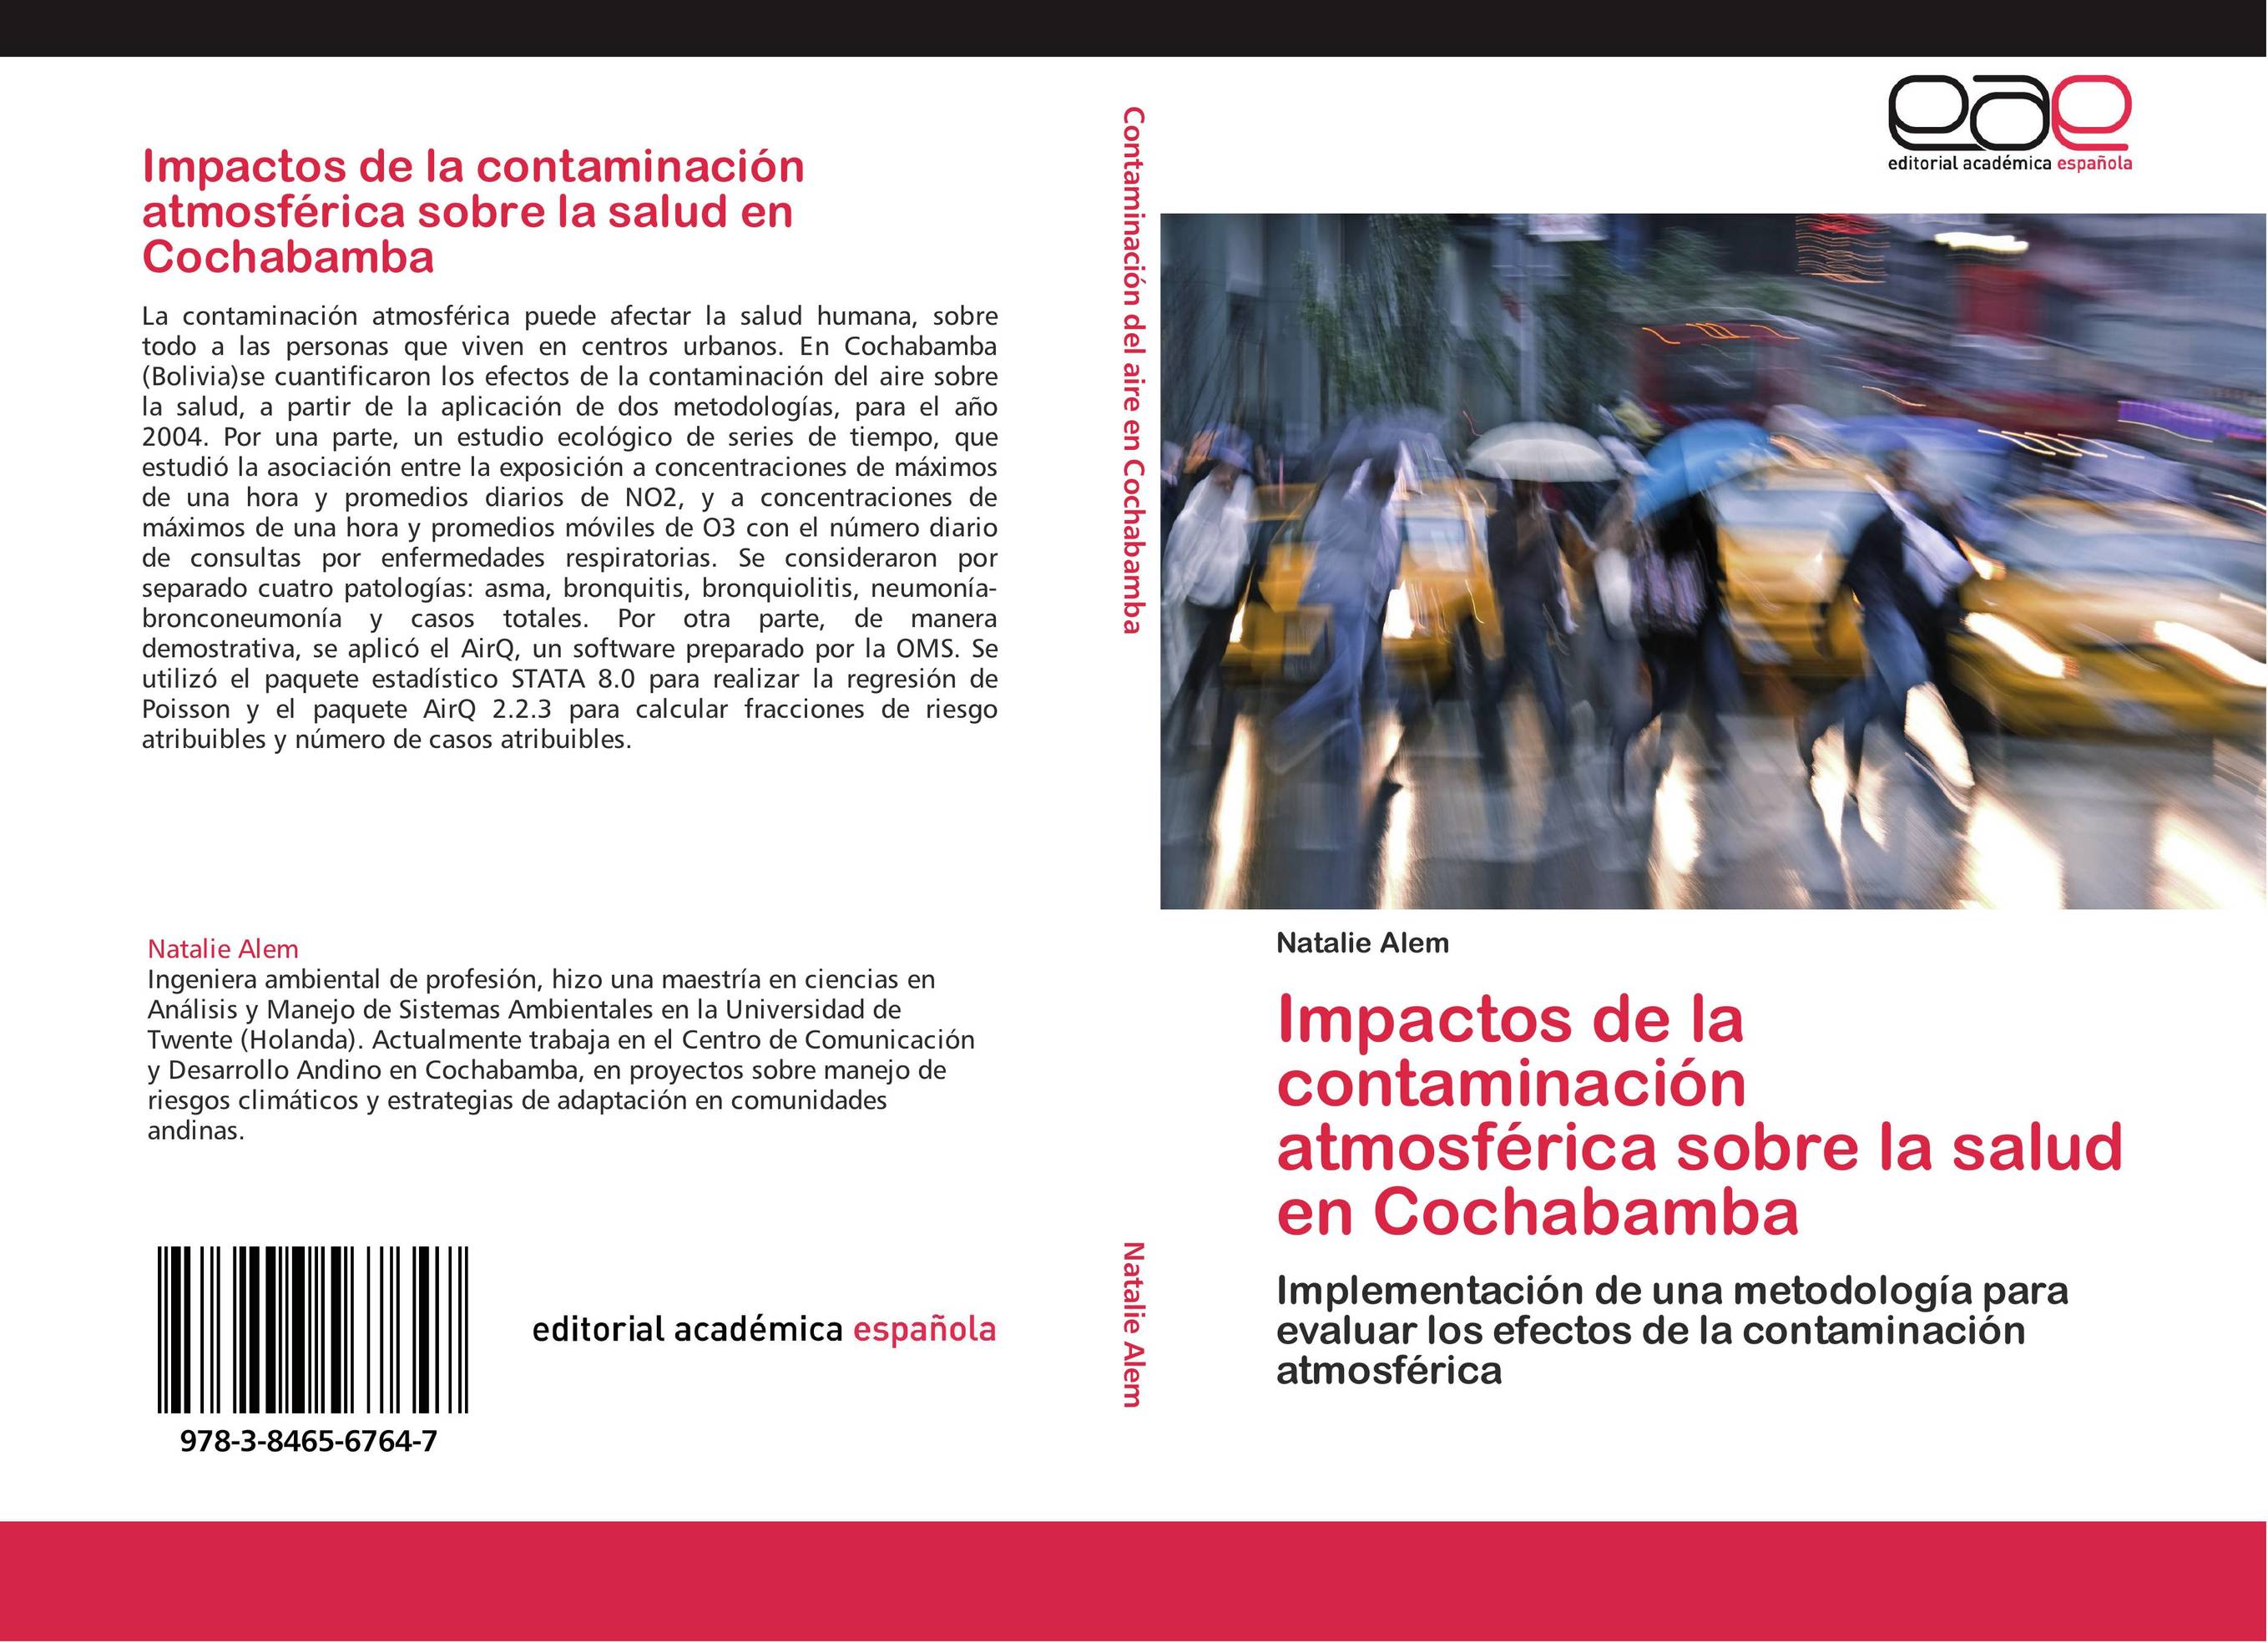 Impactos de la contaminación atmosférica sobre la salud en Cochabamba